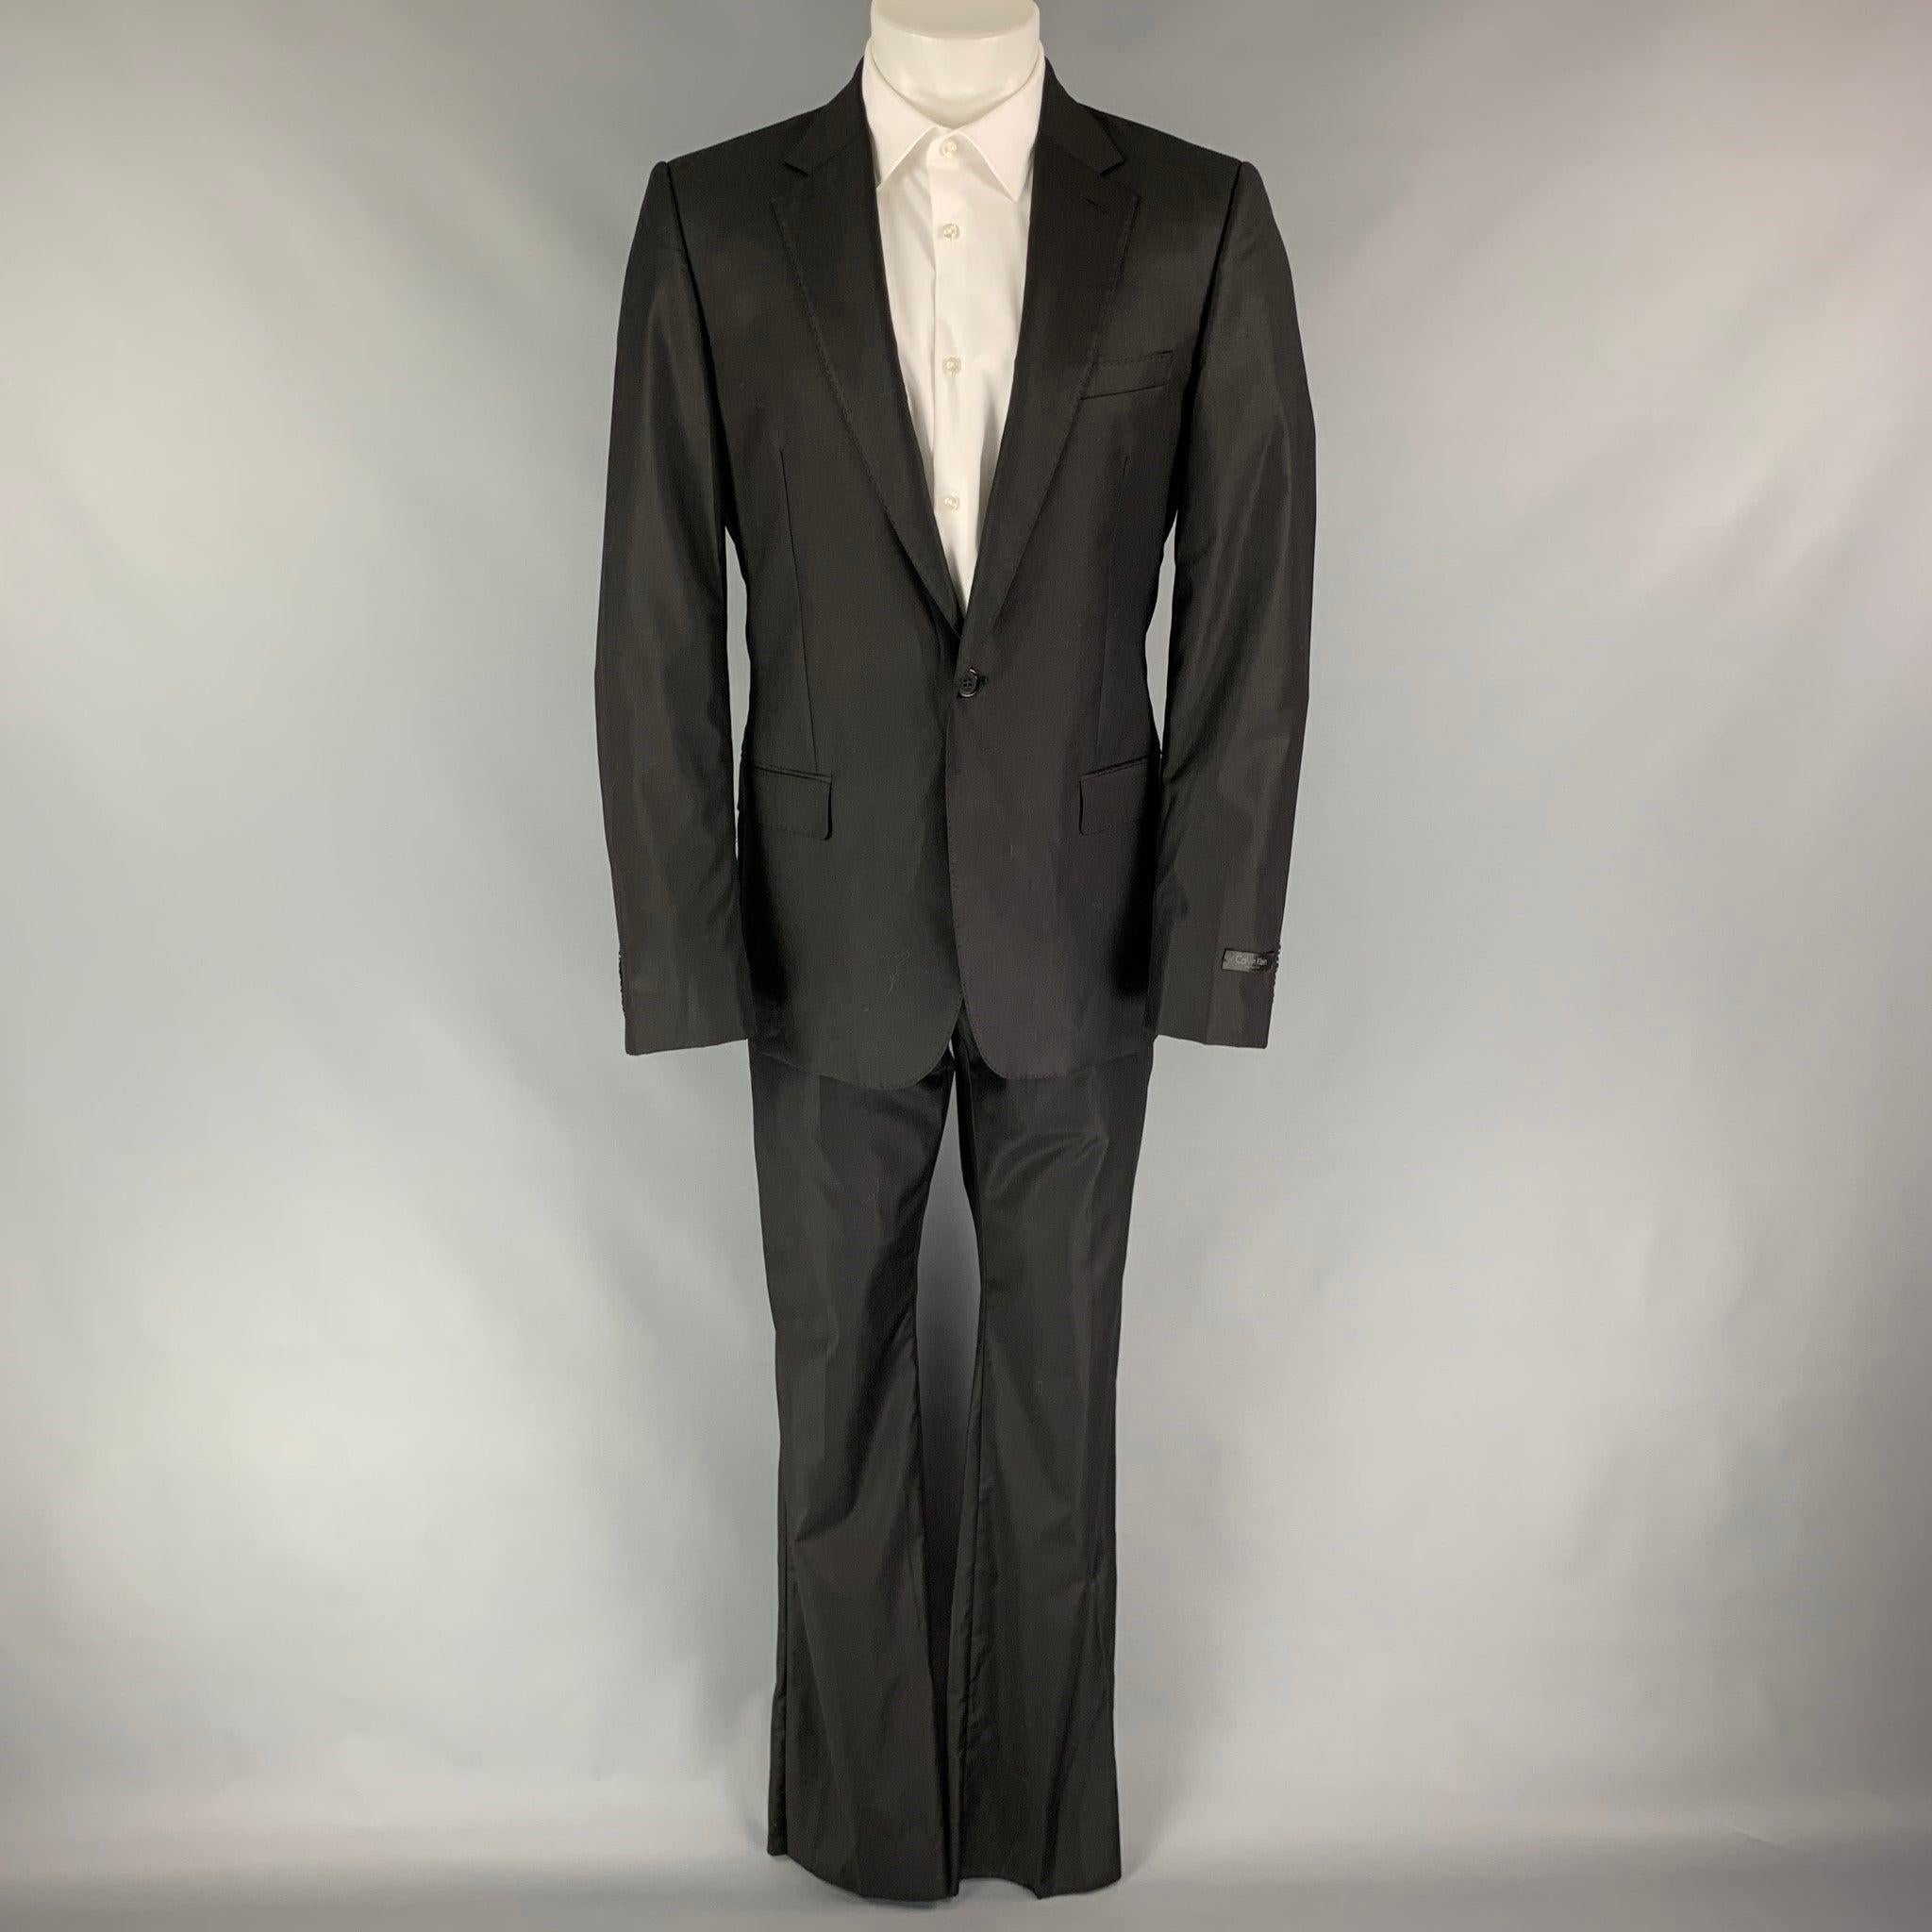 COLLECTION CALVIN S
Le costume est en laine noire avec une doublure complète et comprend un manteau de sport à une seule poitrine et un seul bouton avec un revers à cran et un pantalon assorti à devant plat. Excellent état d'origine. 

Marqué :  